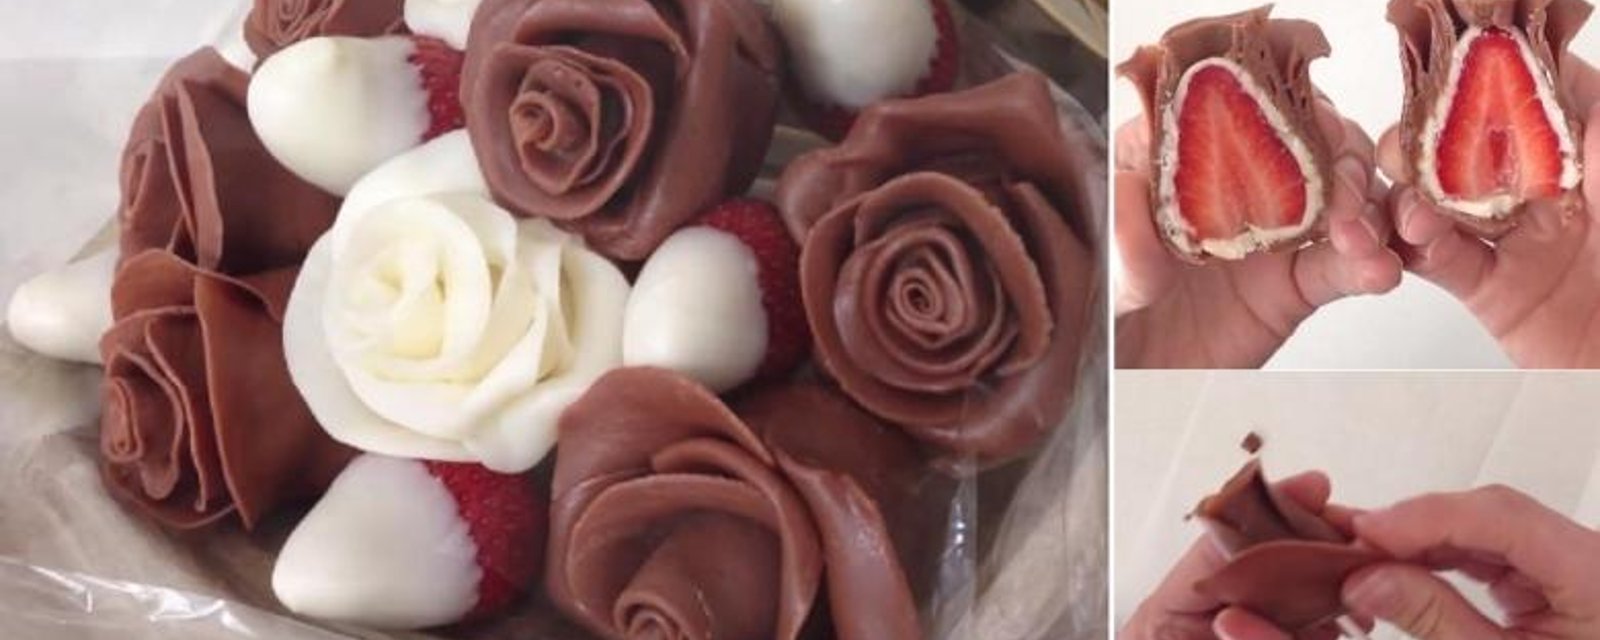 Ne faites pas que tremper les fraises dans le chocolat! Faites plutôt des roses en chocolat! 